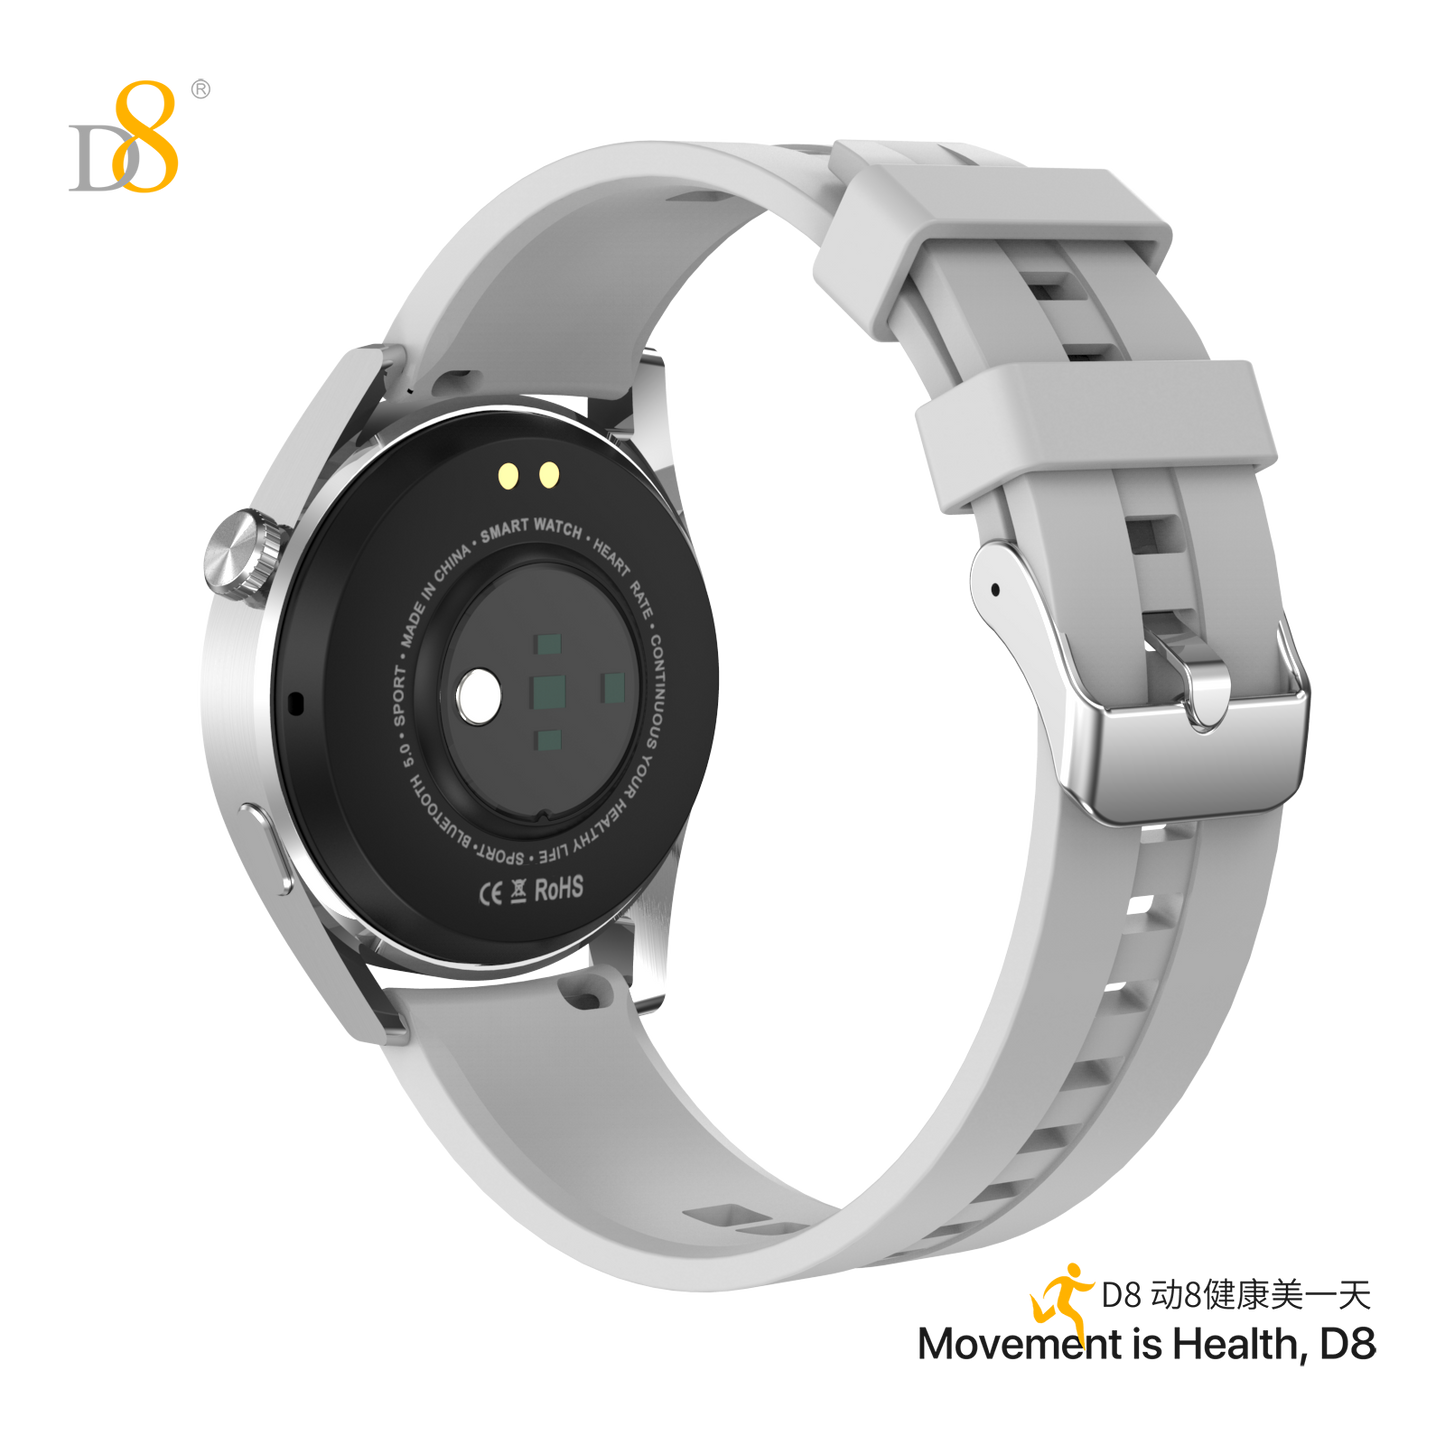 D8智能手表运动手表带蓝牙通话功能UP2